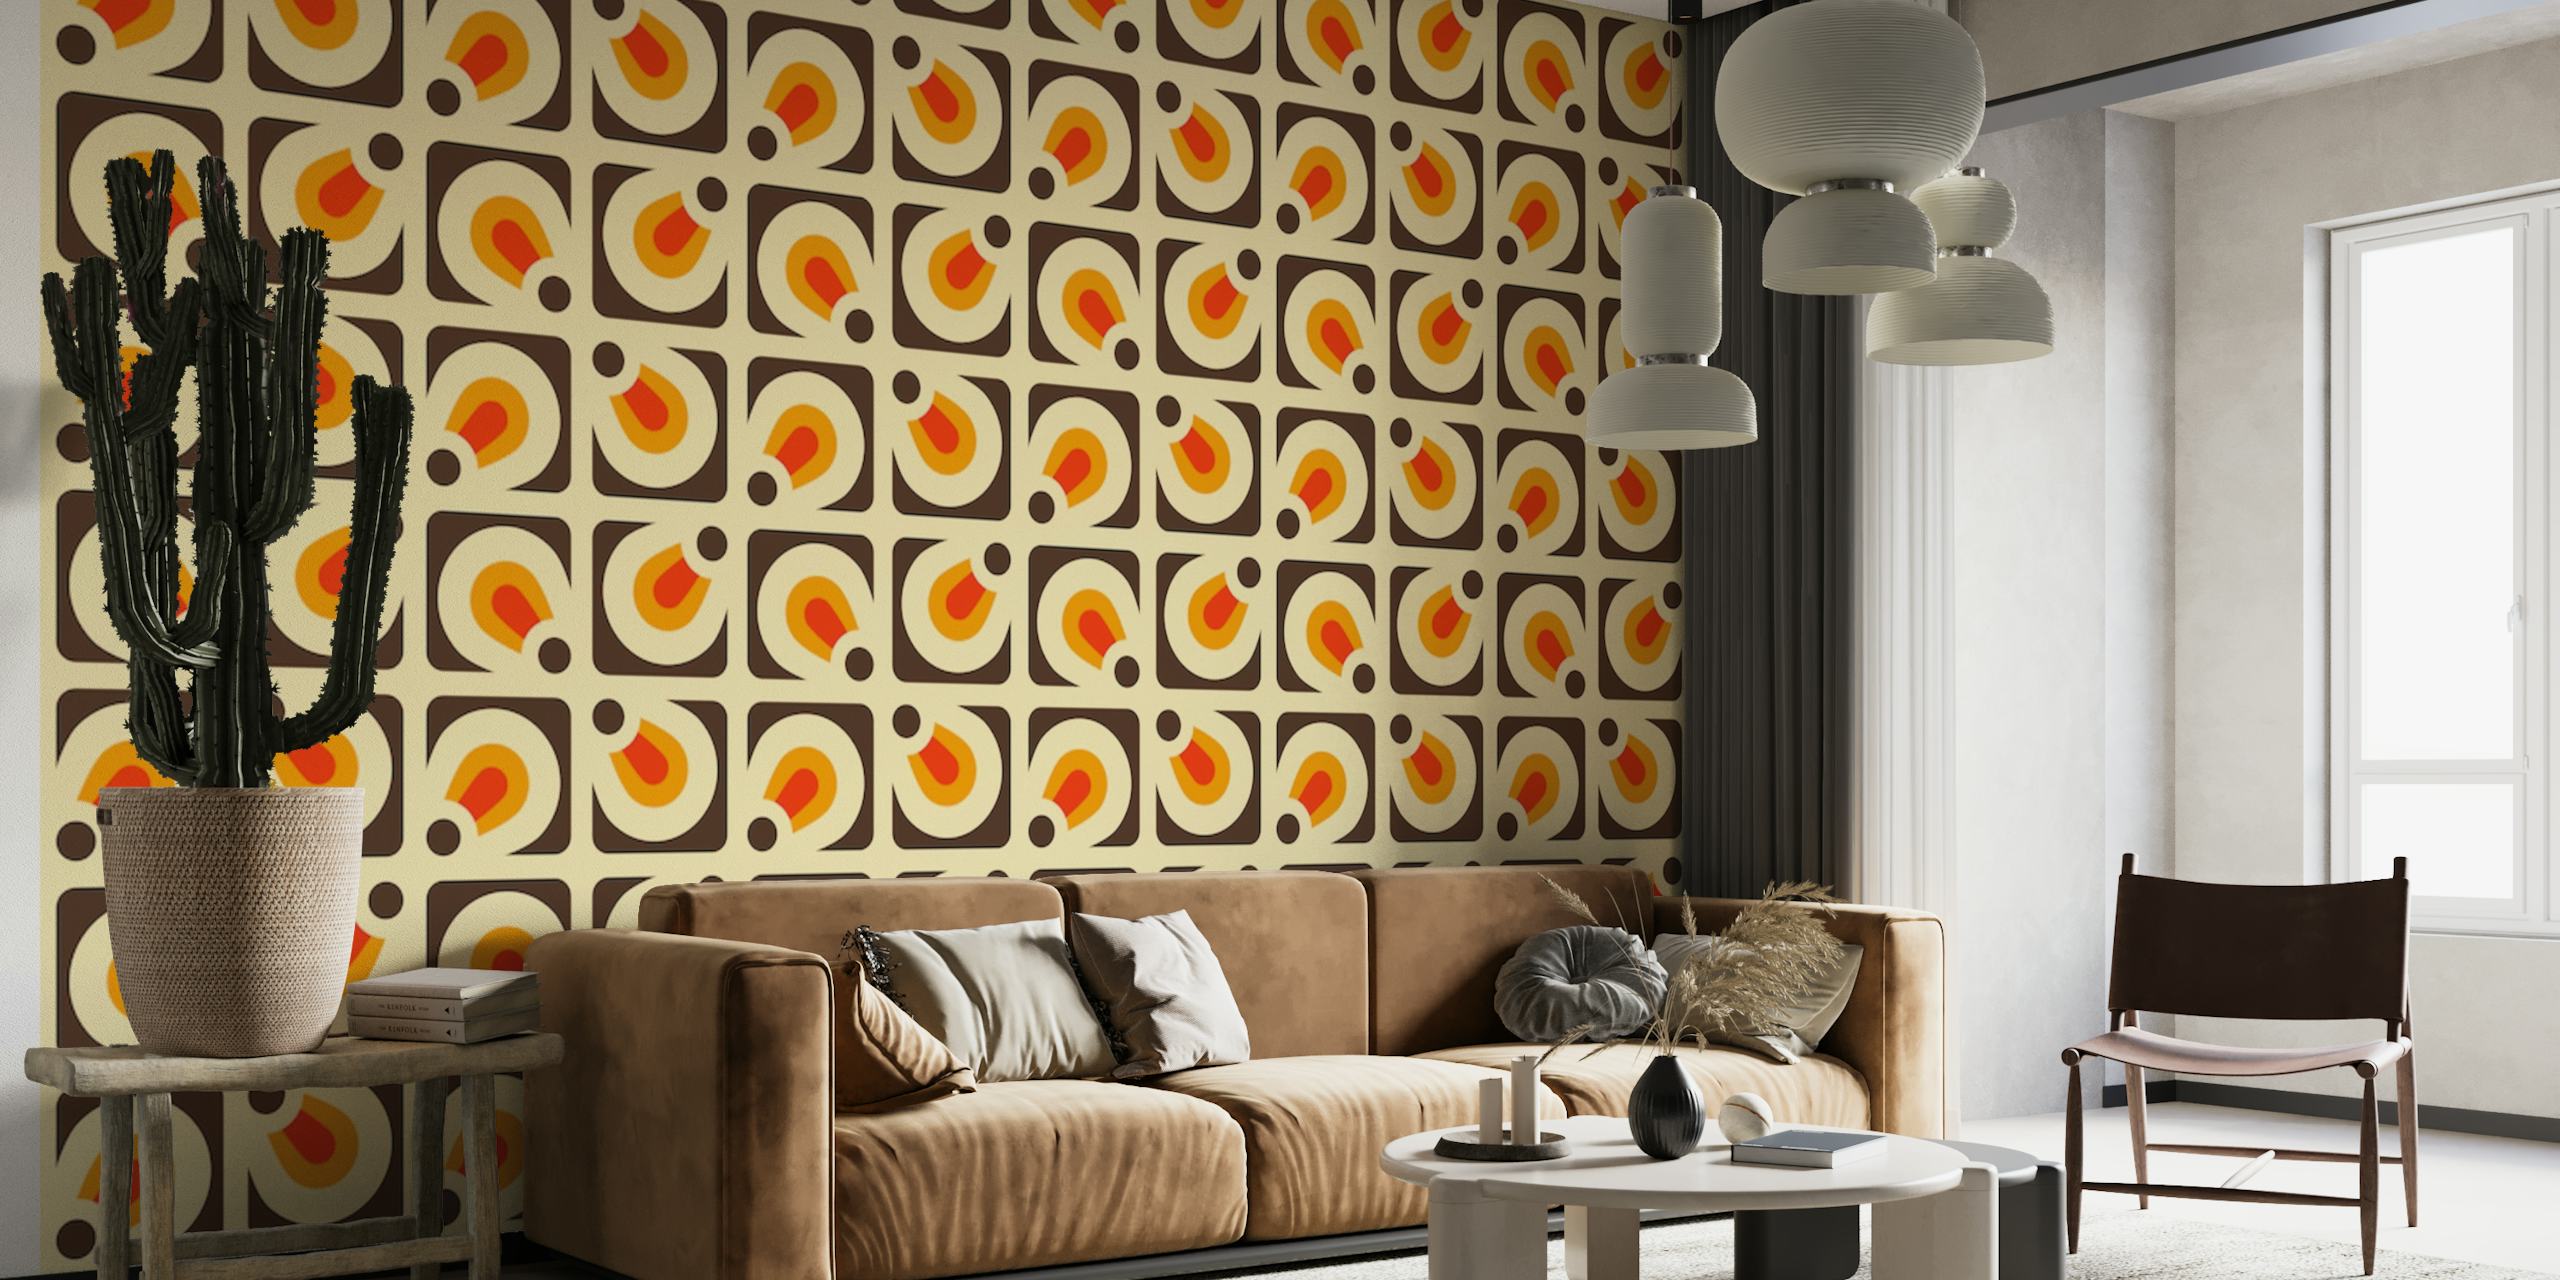 Mural de pared '2146 Retro Pattern' de inspiración vintage con formas geométricas en naranja y blanco